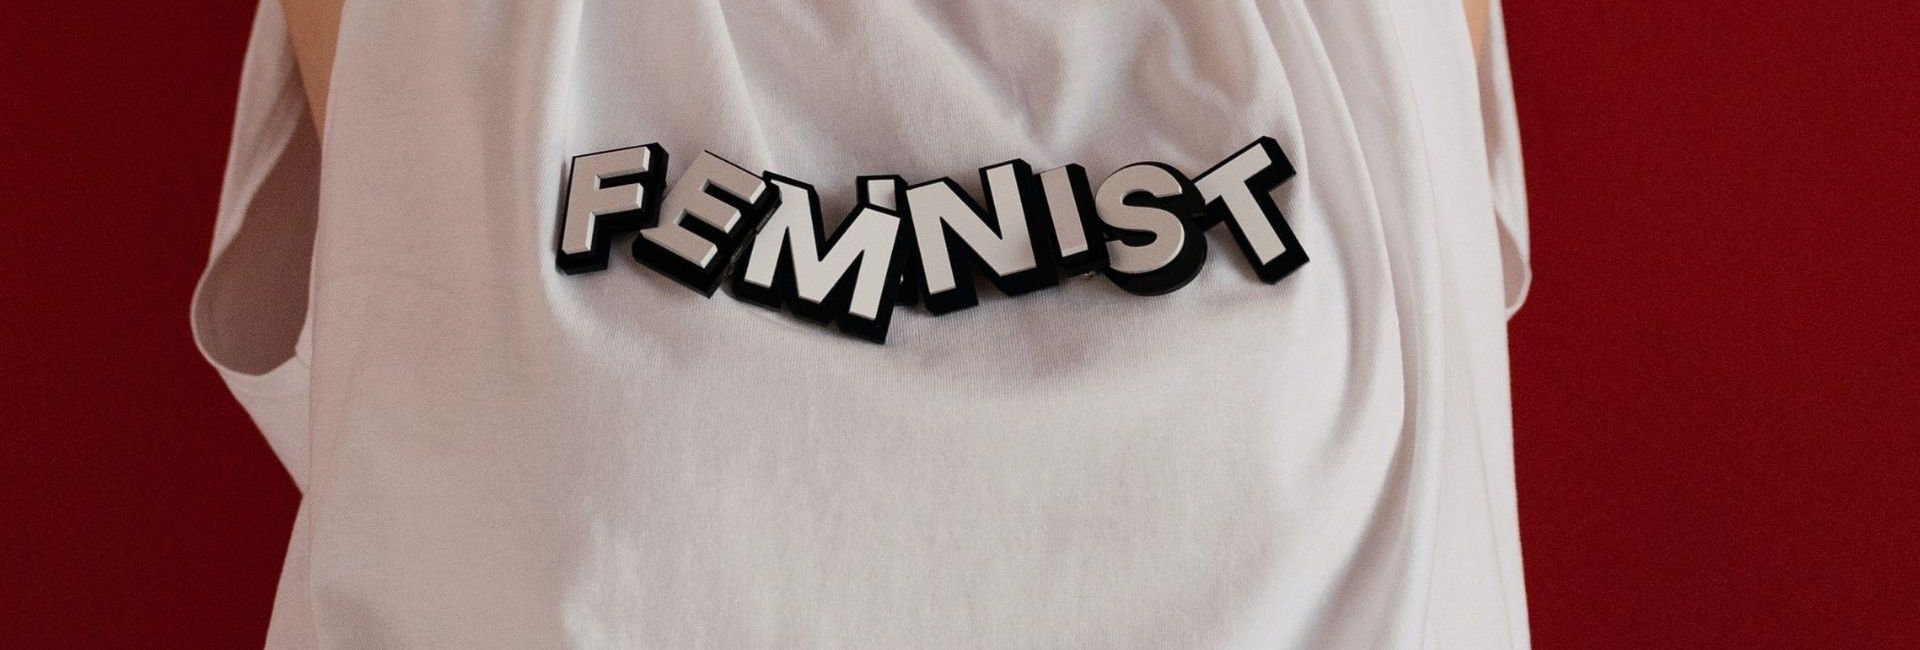 t shirt feminist